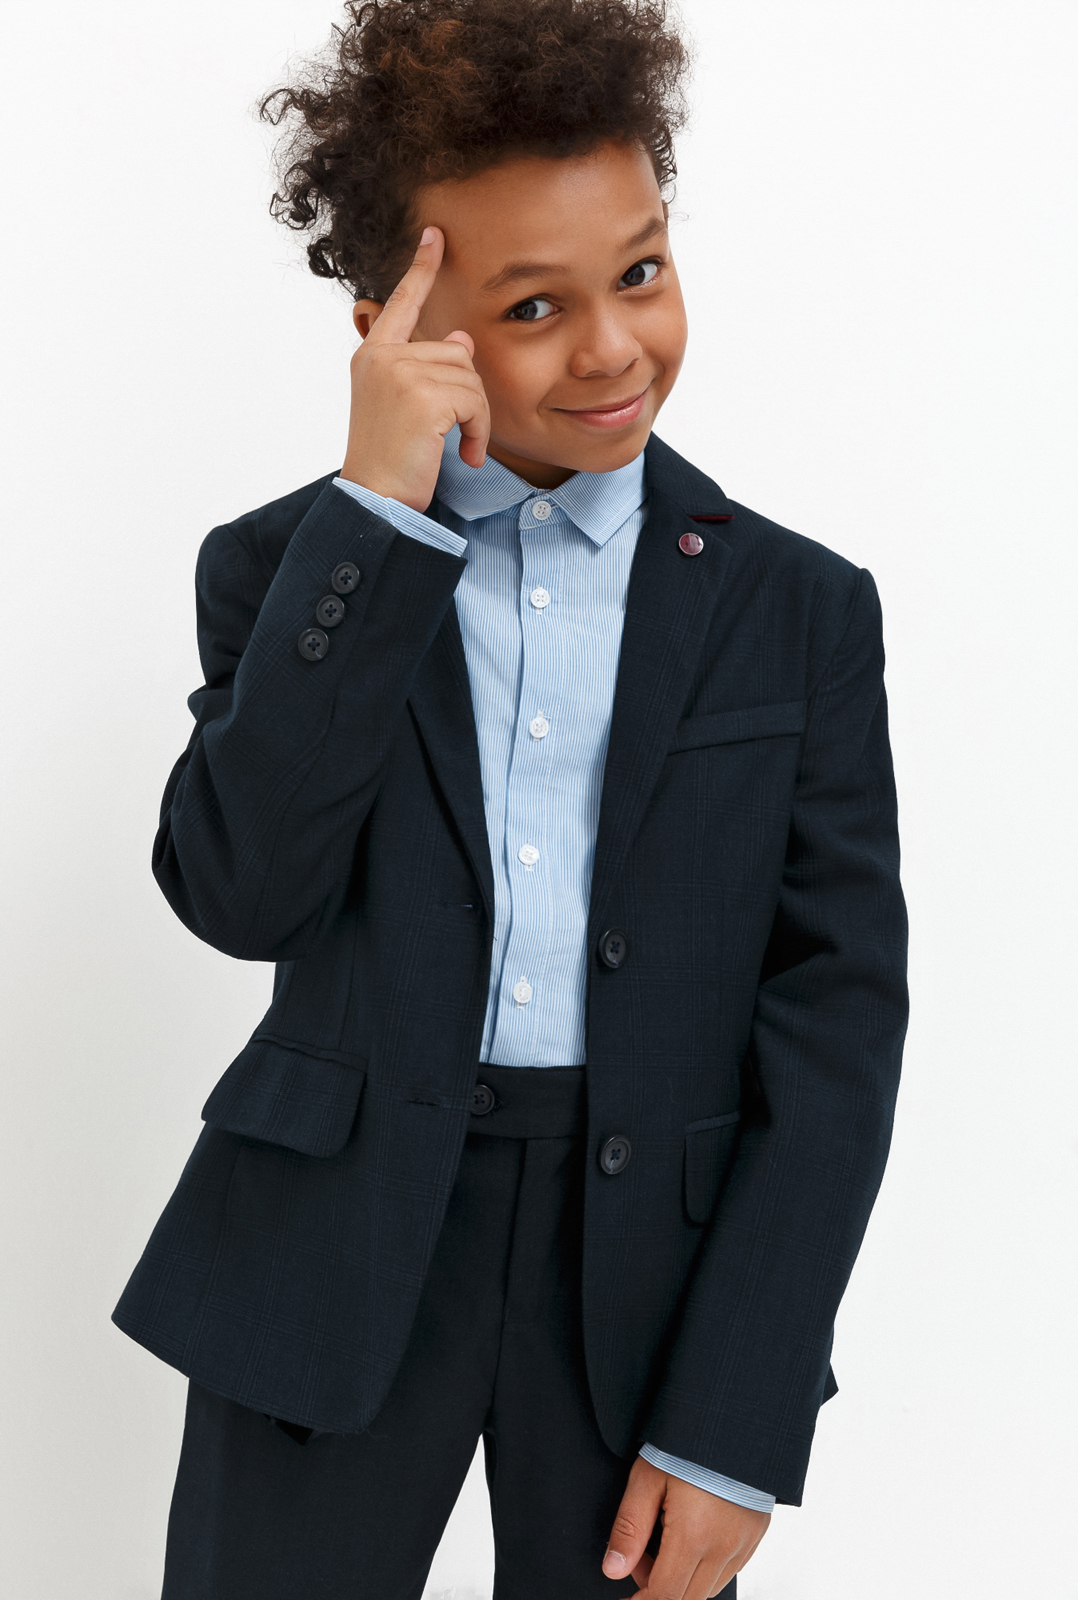 Пиджак для мальчика Acoola Chandler, цвет: темно-голубой. 20140130030_600. Размер 134